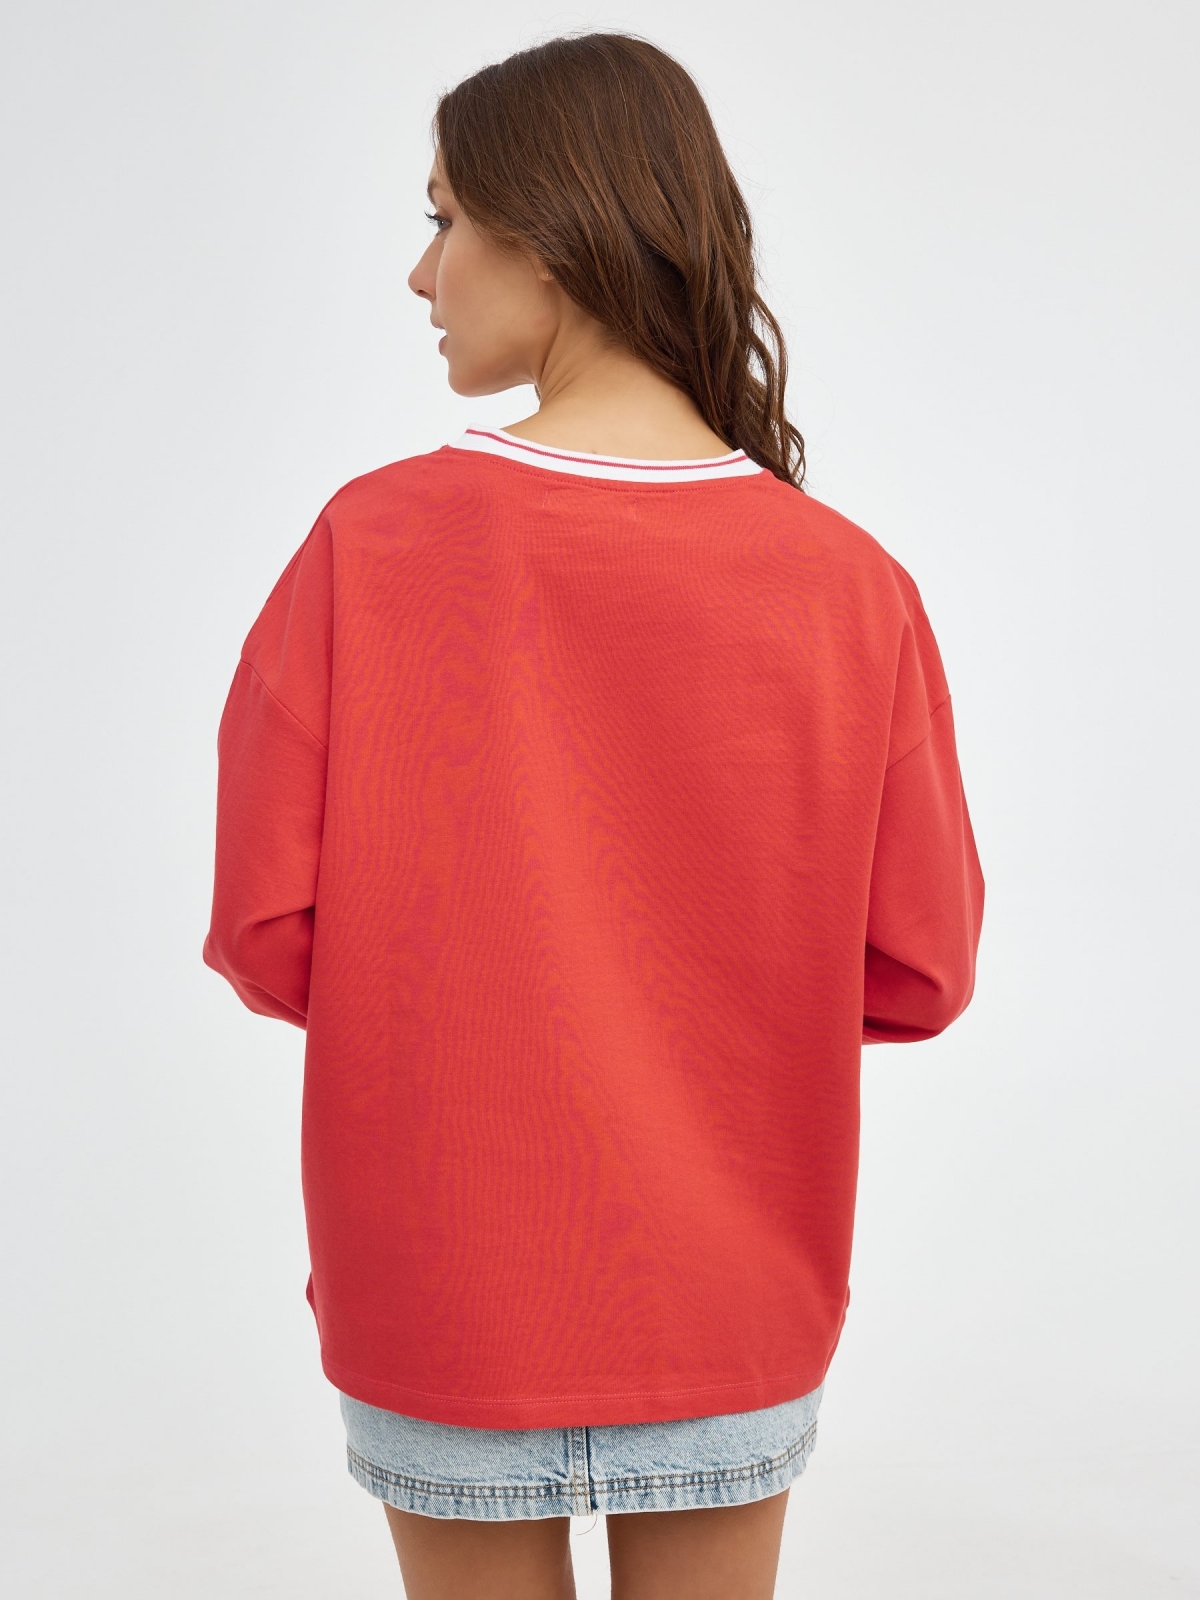 Sweatshirt do Dakota do Norte vermelho vista meia traseira